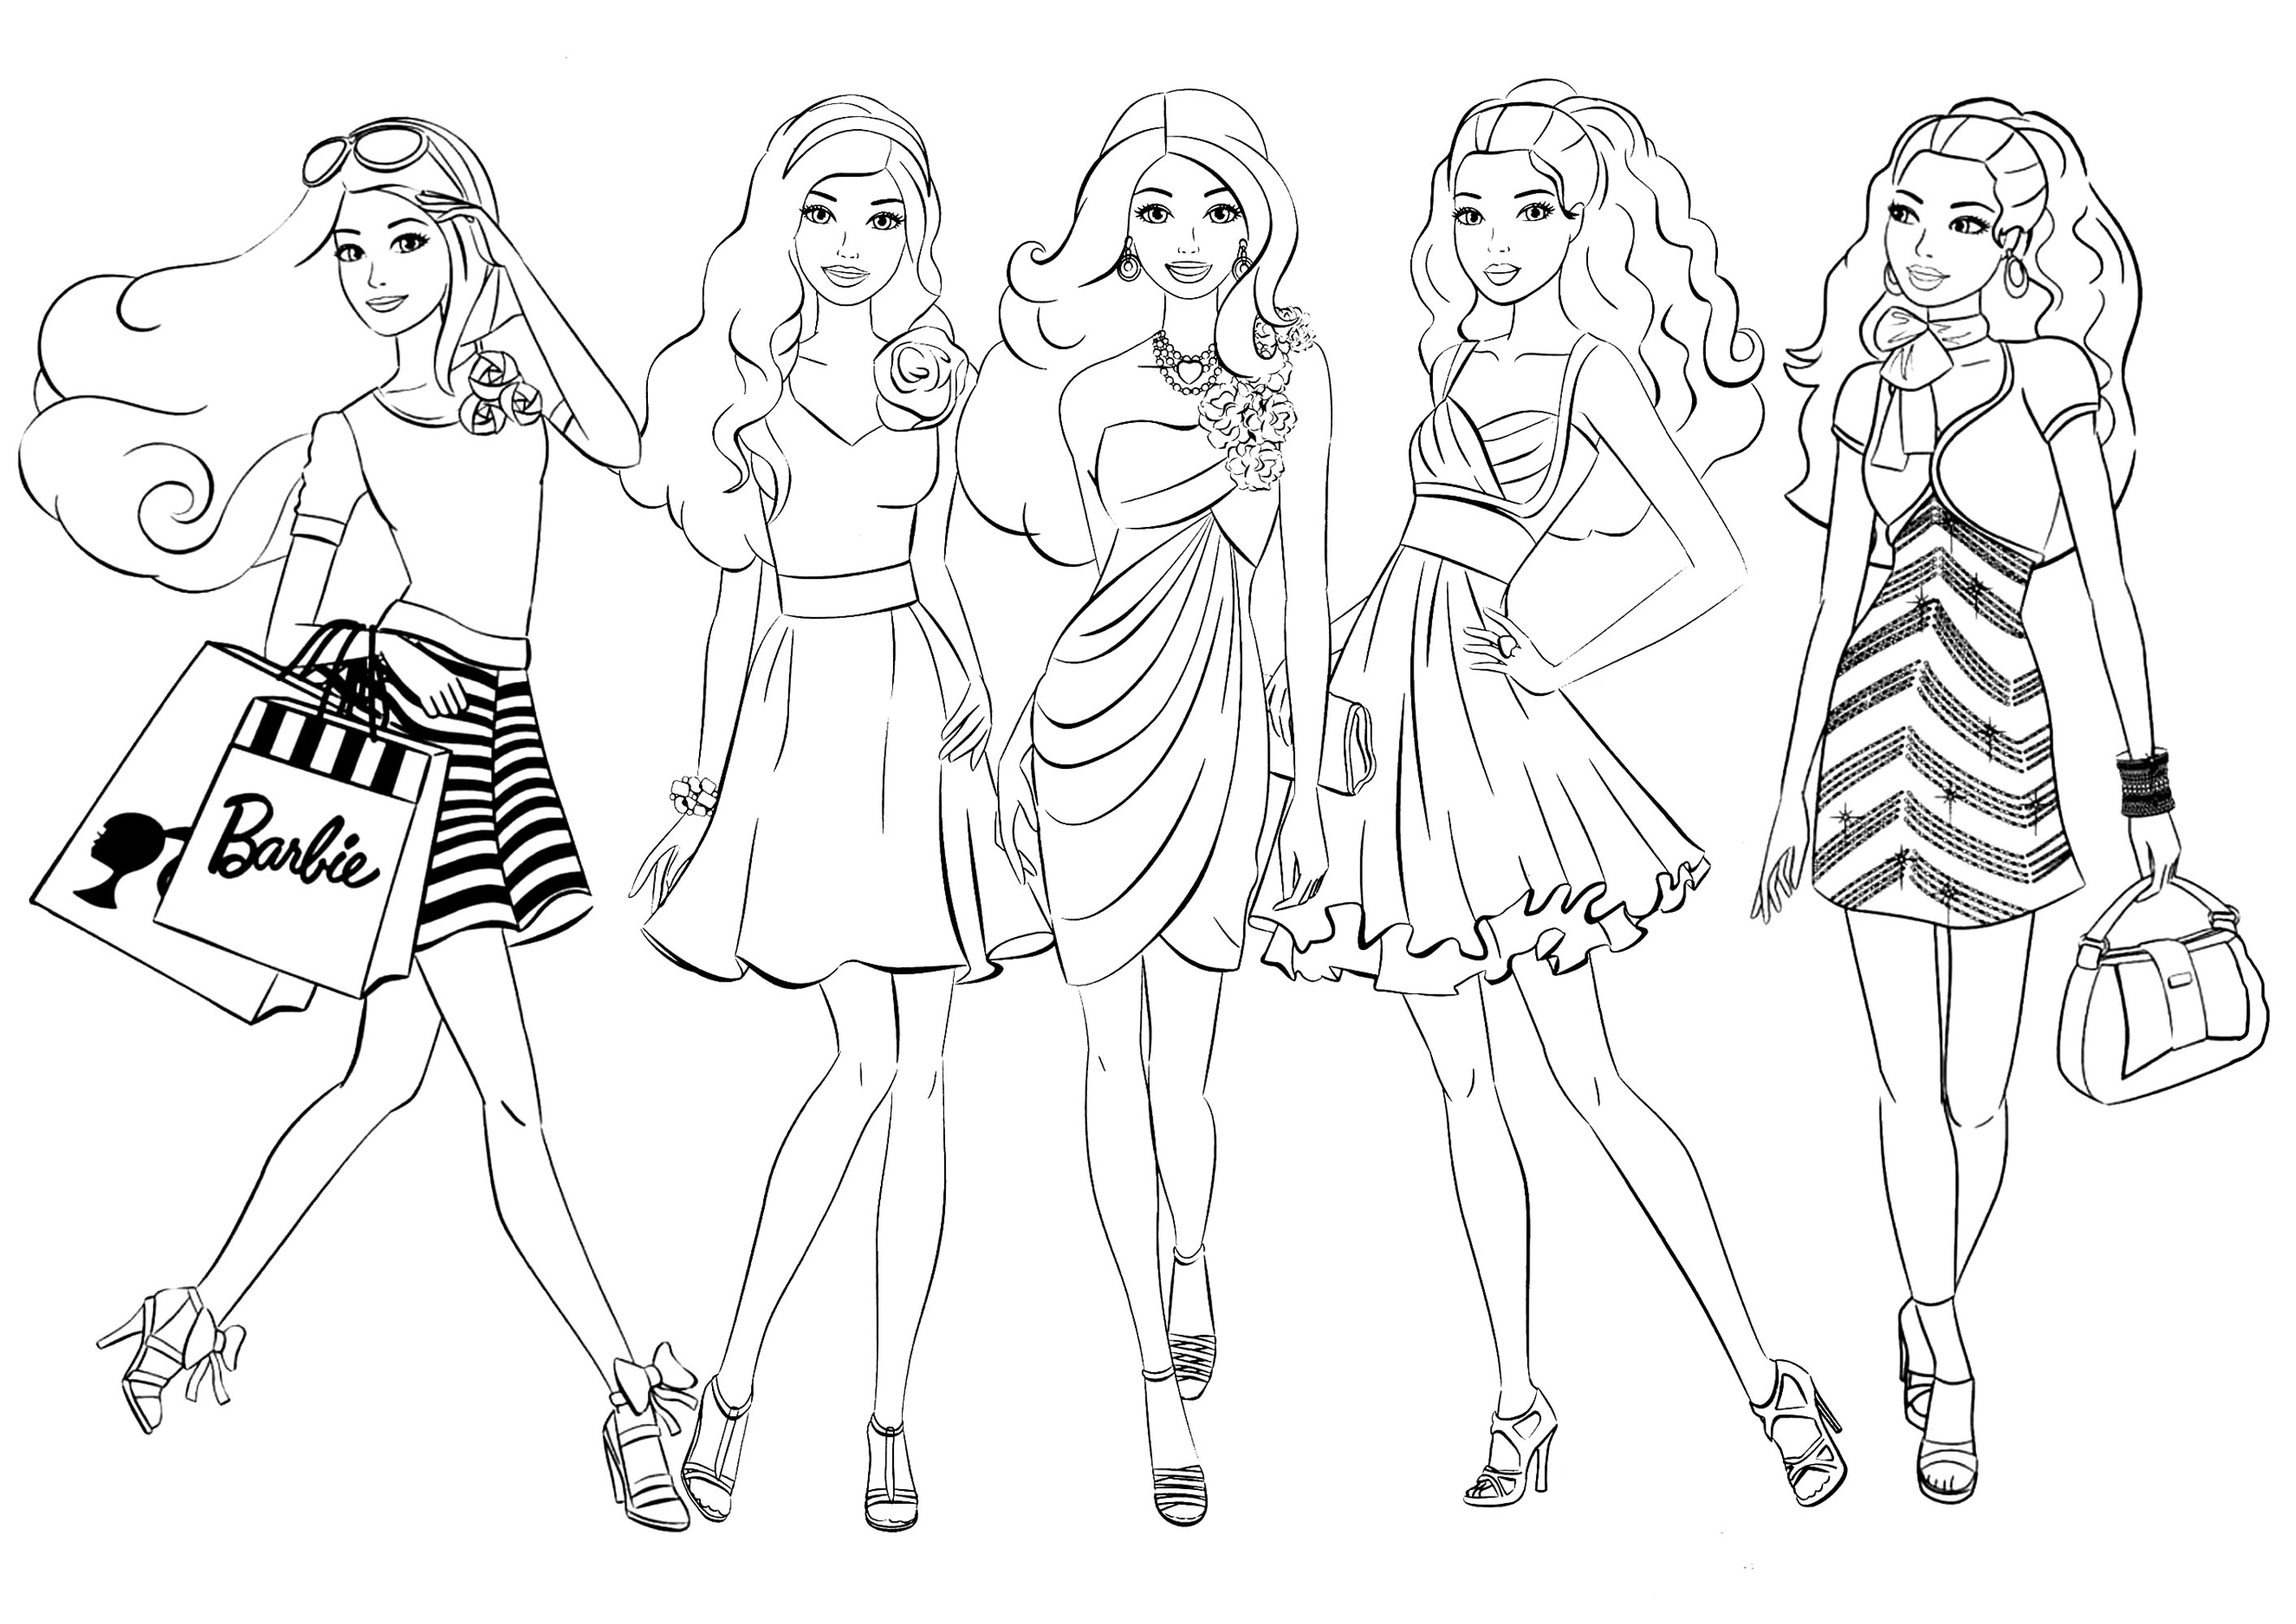 Five Barbie Dolls. Diese Malvorlage zeigt fünf Figuren, die von Barbie-Puppen inspiriert sind, mit verschiedenen Outfits, die du nach Belieben ausmalen kannst.